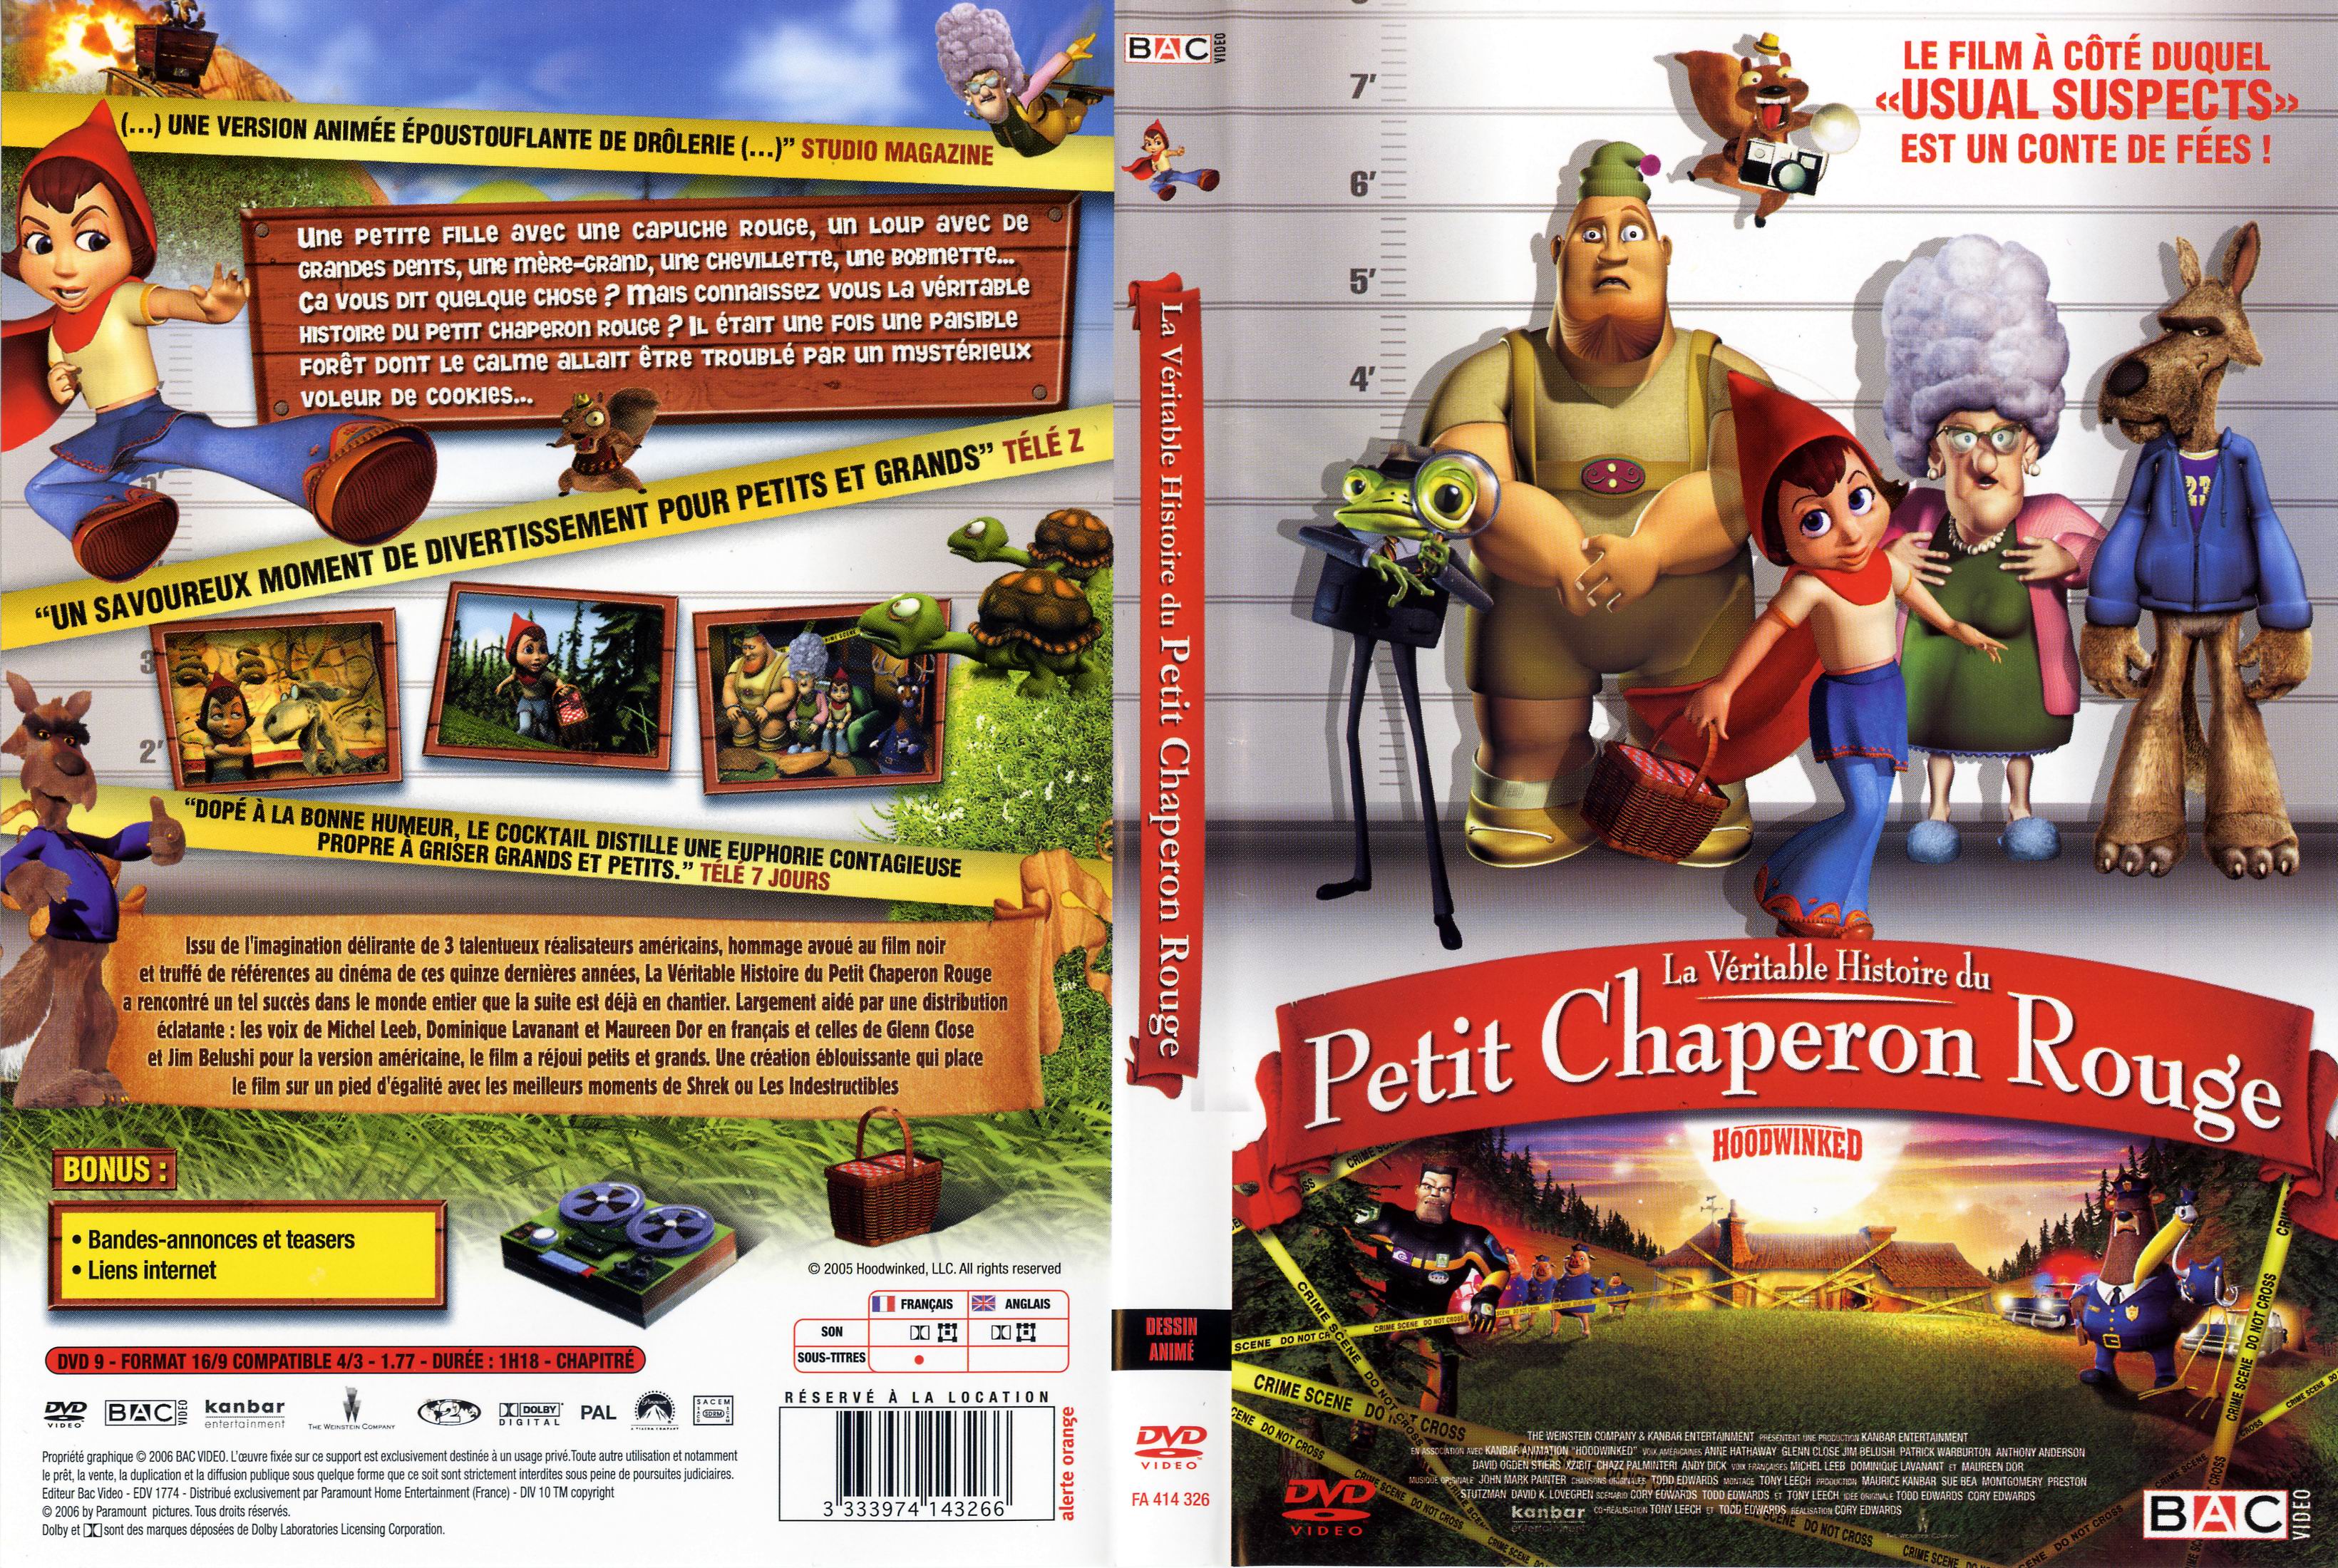 Jaquette DVD La vritable histoire du Petit Chaperon Rouge